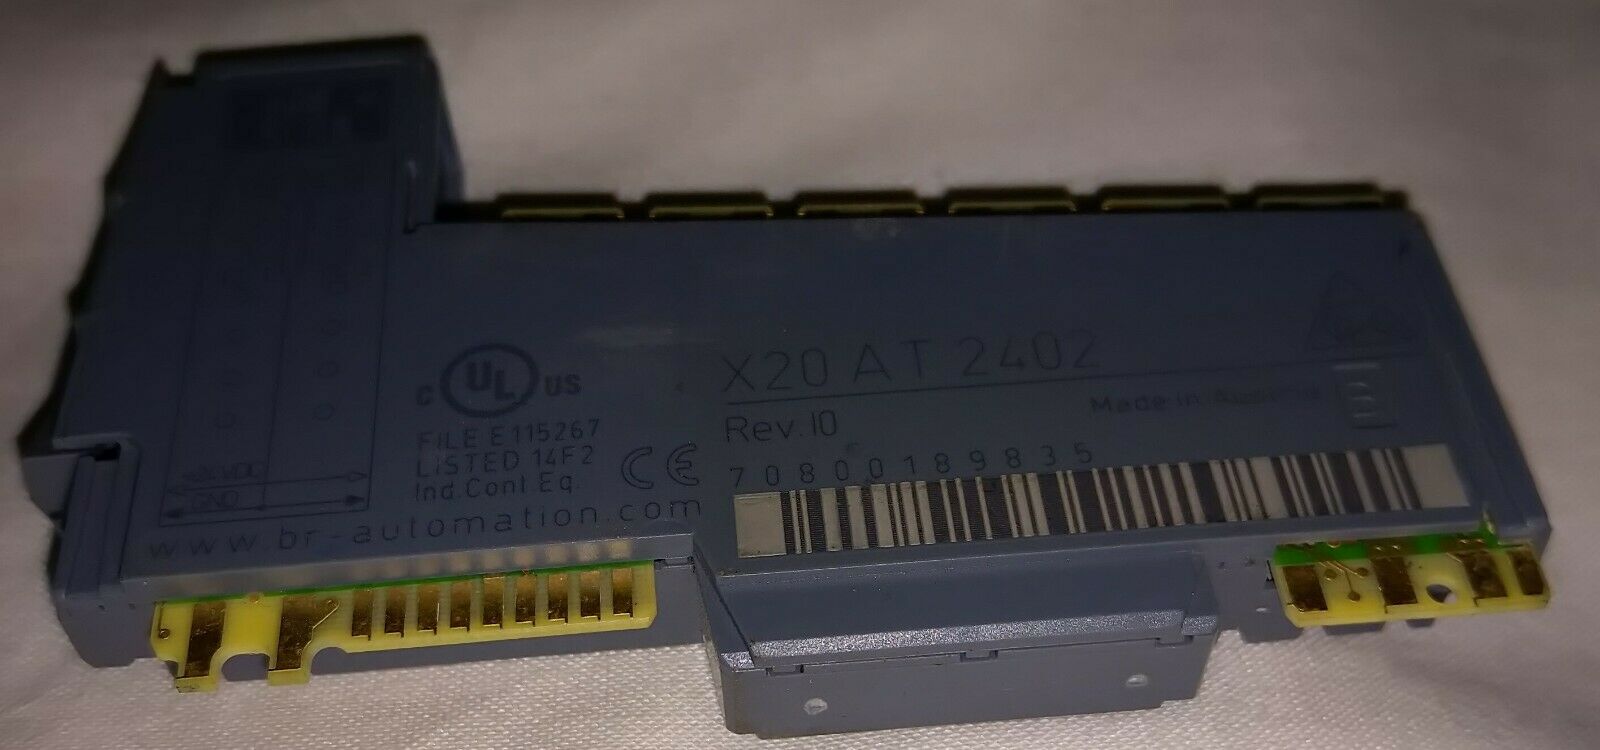 蓝盾 x20at2402 I/O 模块 2 输入用于热电偶 